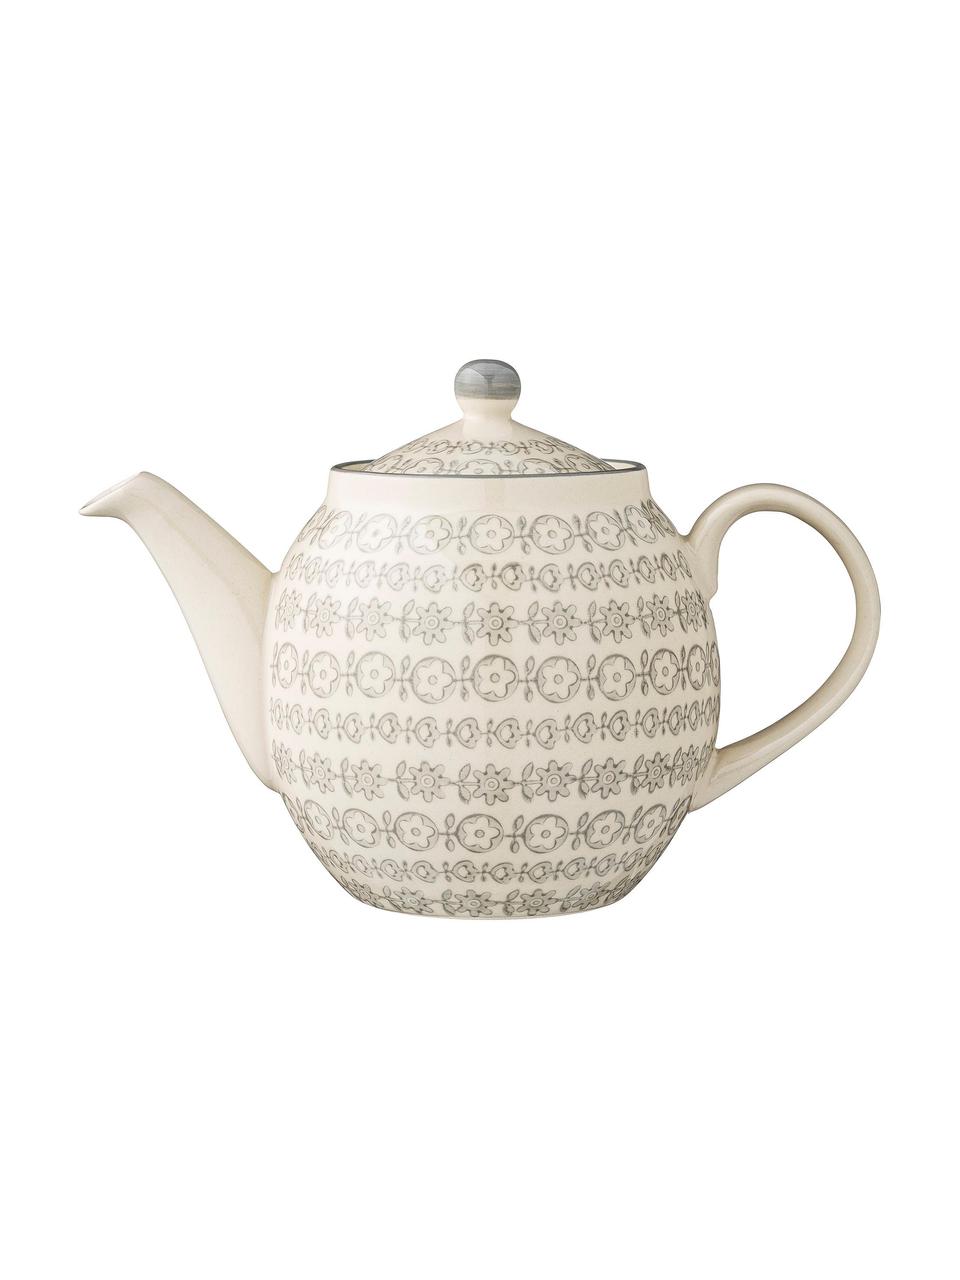 Handbemalte Teekanne Karine mit kleinem Muster, 1.2 L, Steingut, Grau, Cremefarben, Ø 24 x H 16 cm